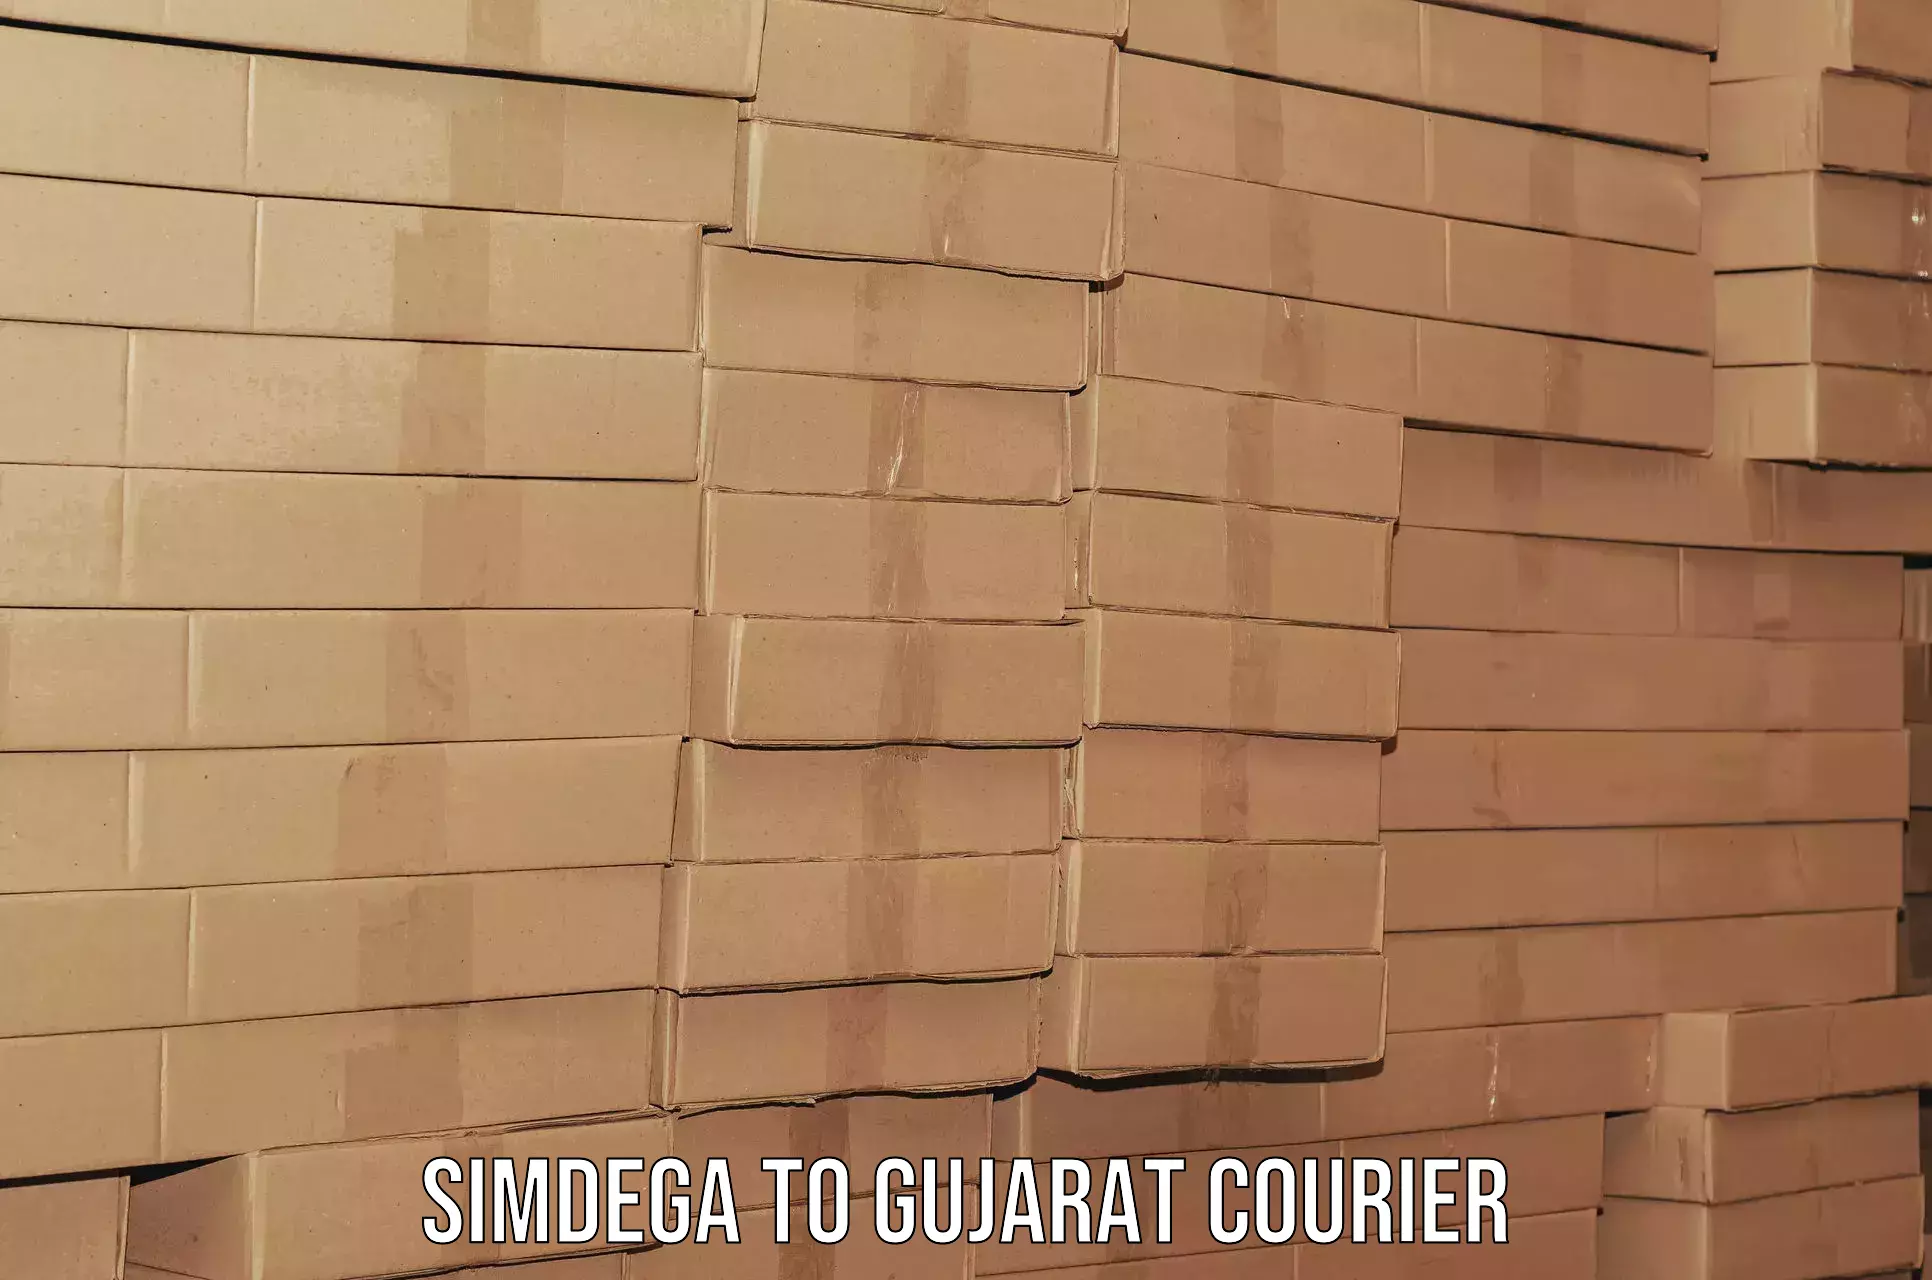 Full-service household moving in Simdega to Gujarat